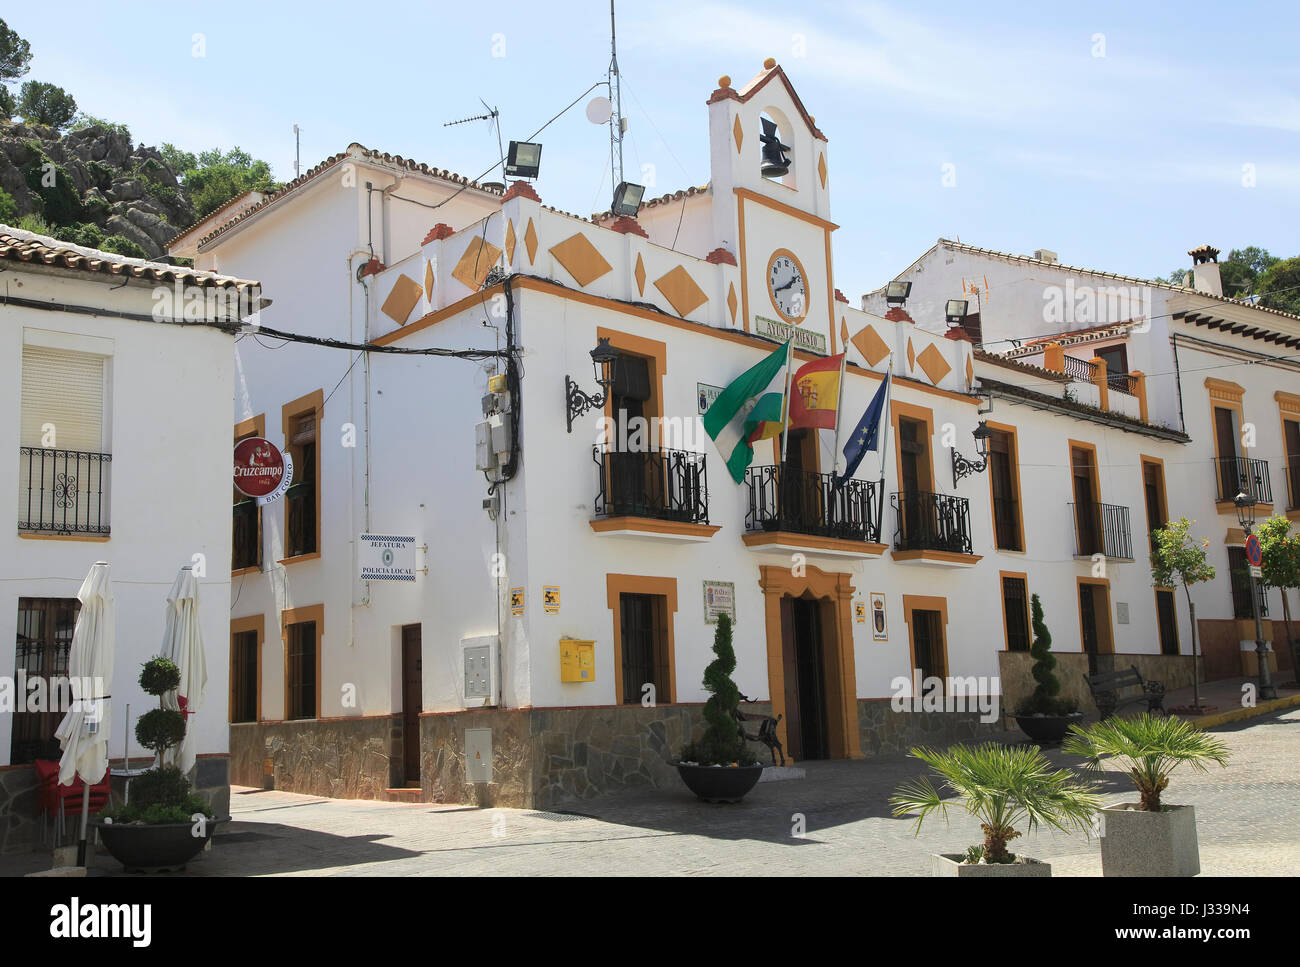 Town hall Ayuntamiento, Plaza de la Constitucion, Montejaque, Serrania de Ronda, Malaga province, Spain Stock Photo